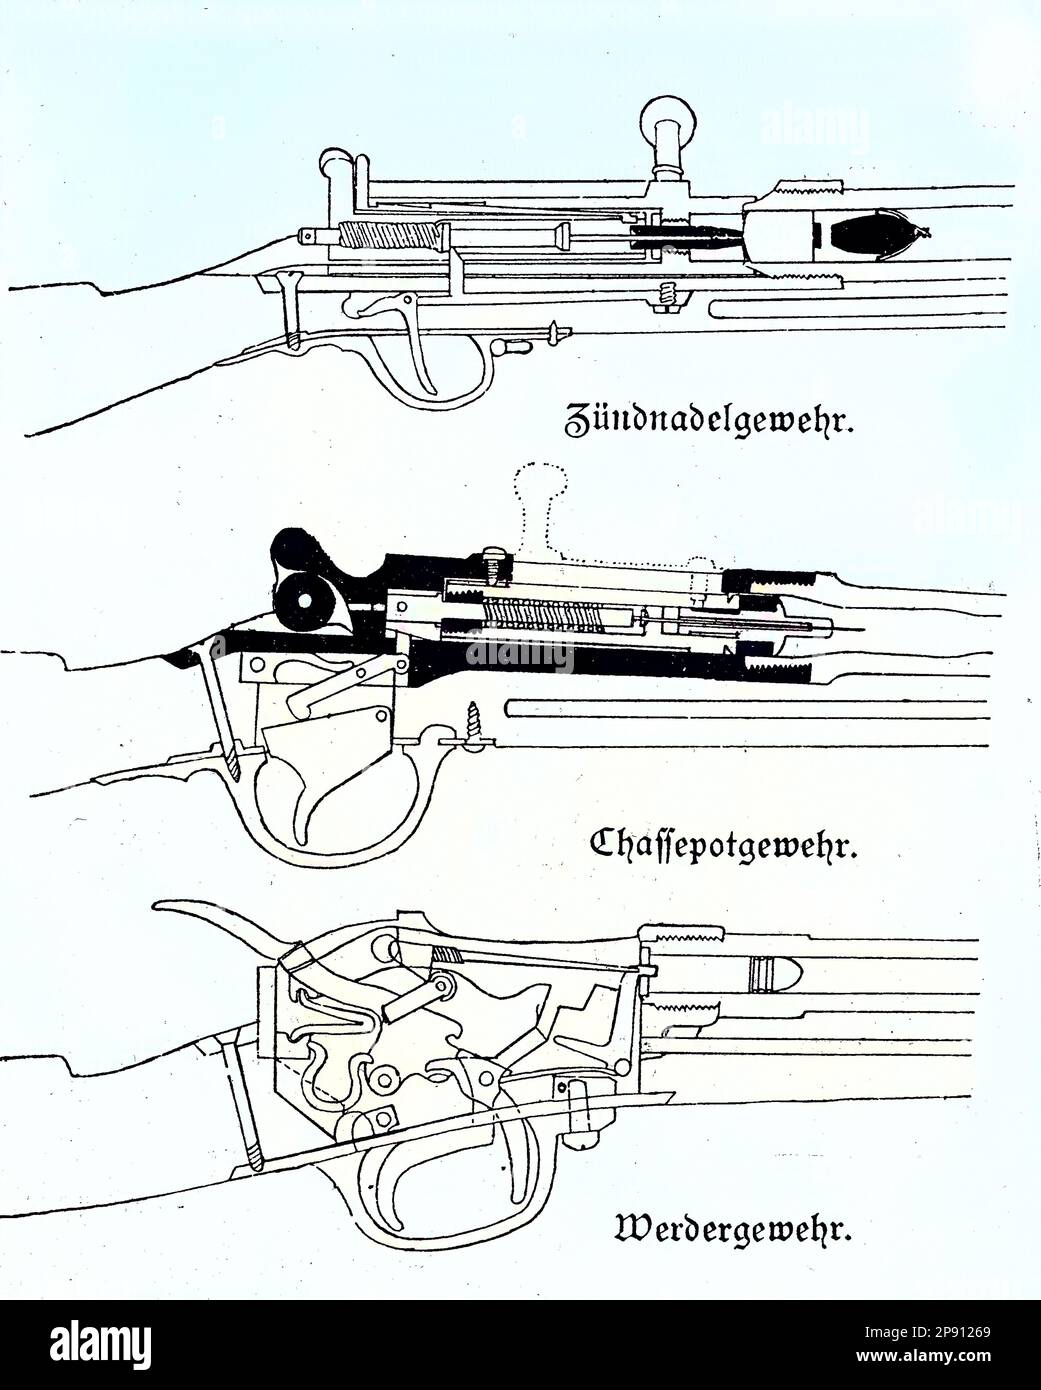 Waffen im deutsch-französischen Krieg, Das Dreyse-Nadelgewehr, welches ein militärisches Hinterladergewehr ist, berühmt als Hauptinfanteriewaffe der Preußen, die es 1841 als leichtes Perkussionsgewehr Modell 1841 in den Dienst nahmen, Leichtes Perkussionsgewehr Modell 1841. Das Chassepot, offiziell bekannt als Fusil modele 1866, was ein Repetiergewehr mit Hinterlader. Das bayerische Werdergewehr M - 1869 war das erste deutsche Hinterladergewehr mit einer Metallpatrone und einer Zentralzündung, Situation aus der Zeit des Deutsch-Französischen Krieges oder Deutsch-Deutschen Krieges, Deutsch-Fran Stock Photo